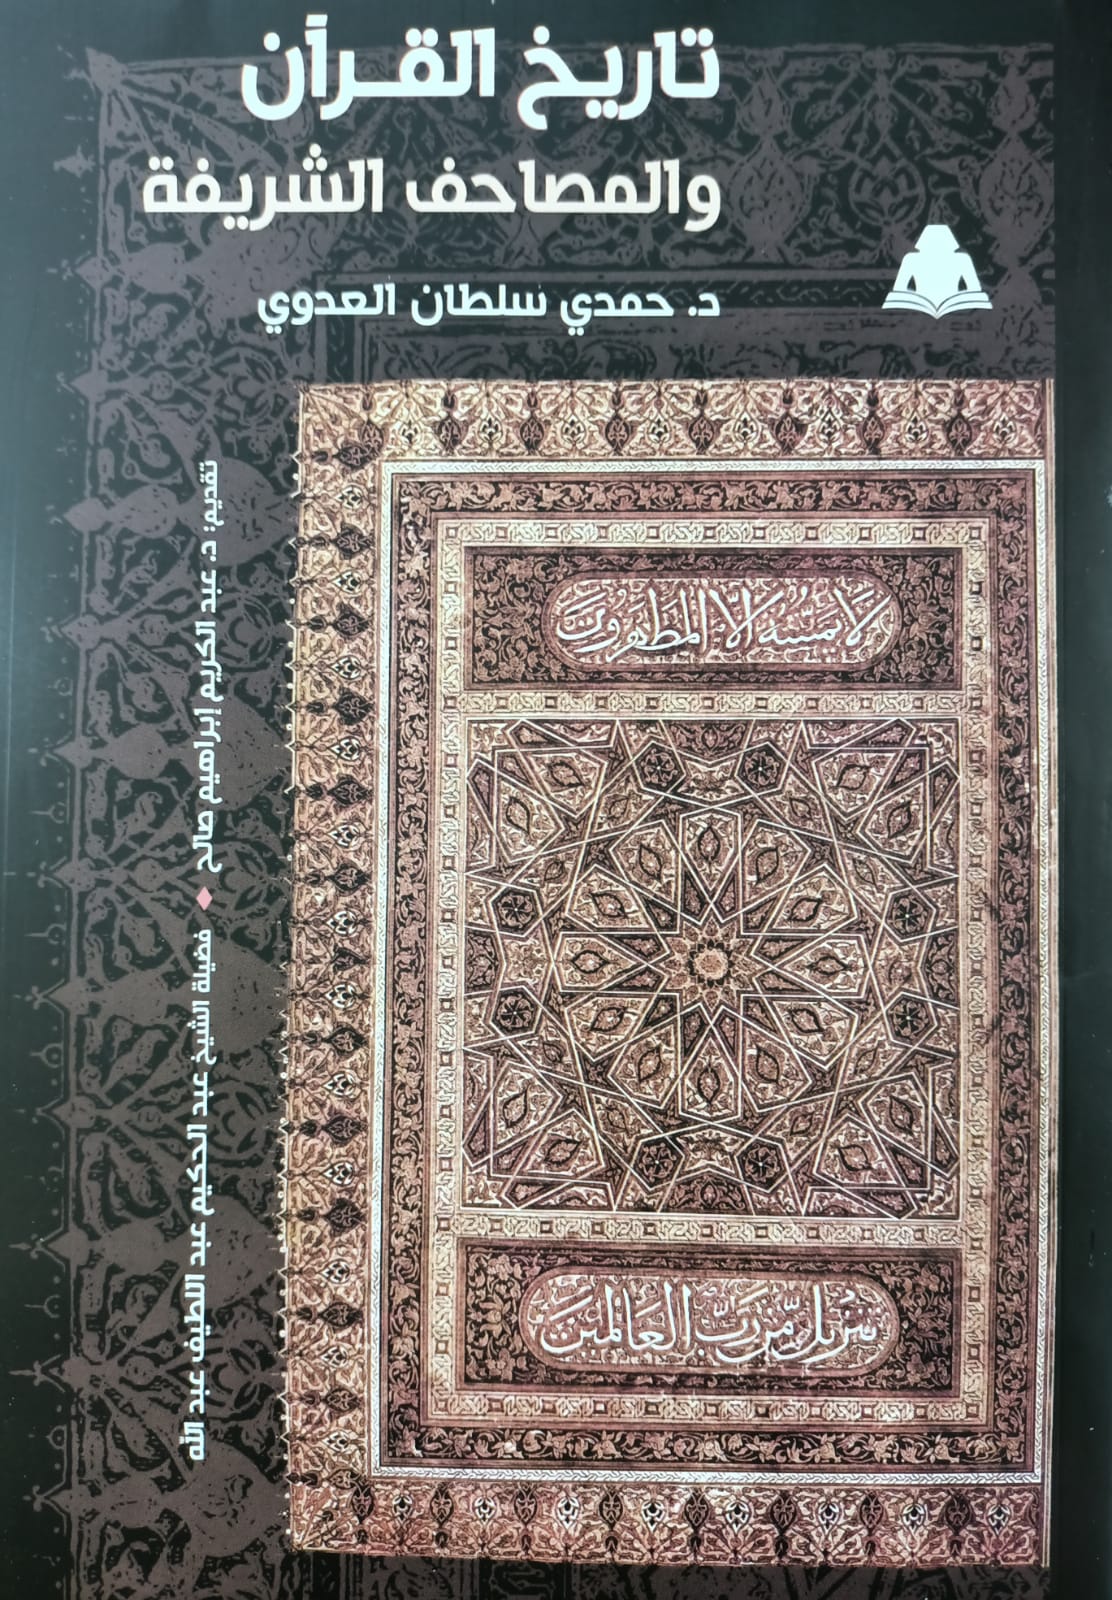 تاريخ القرآن والمصاحف الشريفة